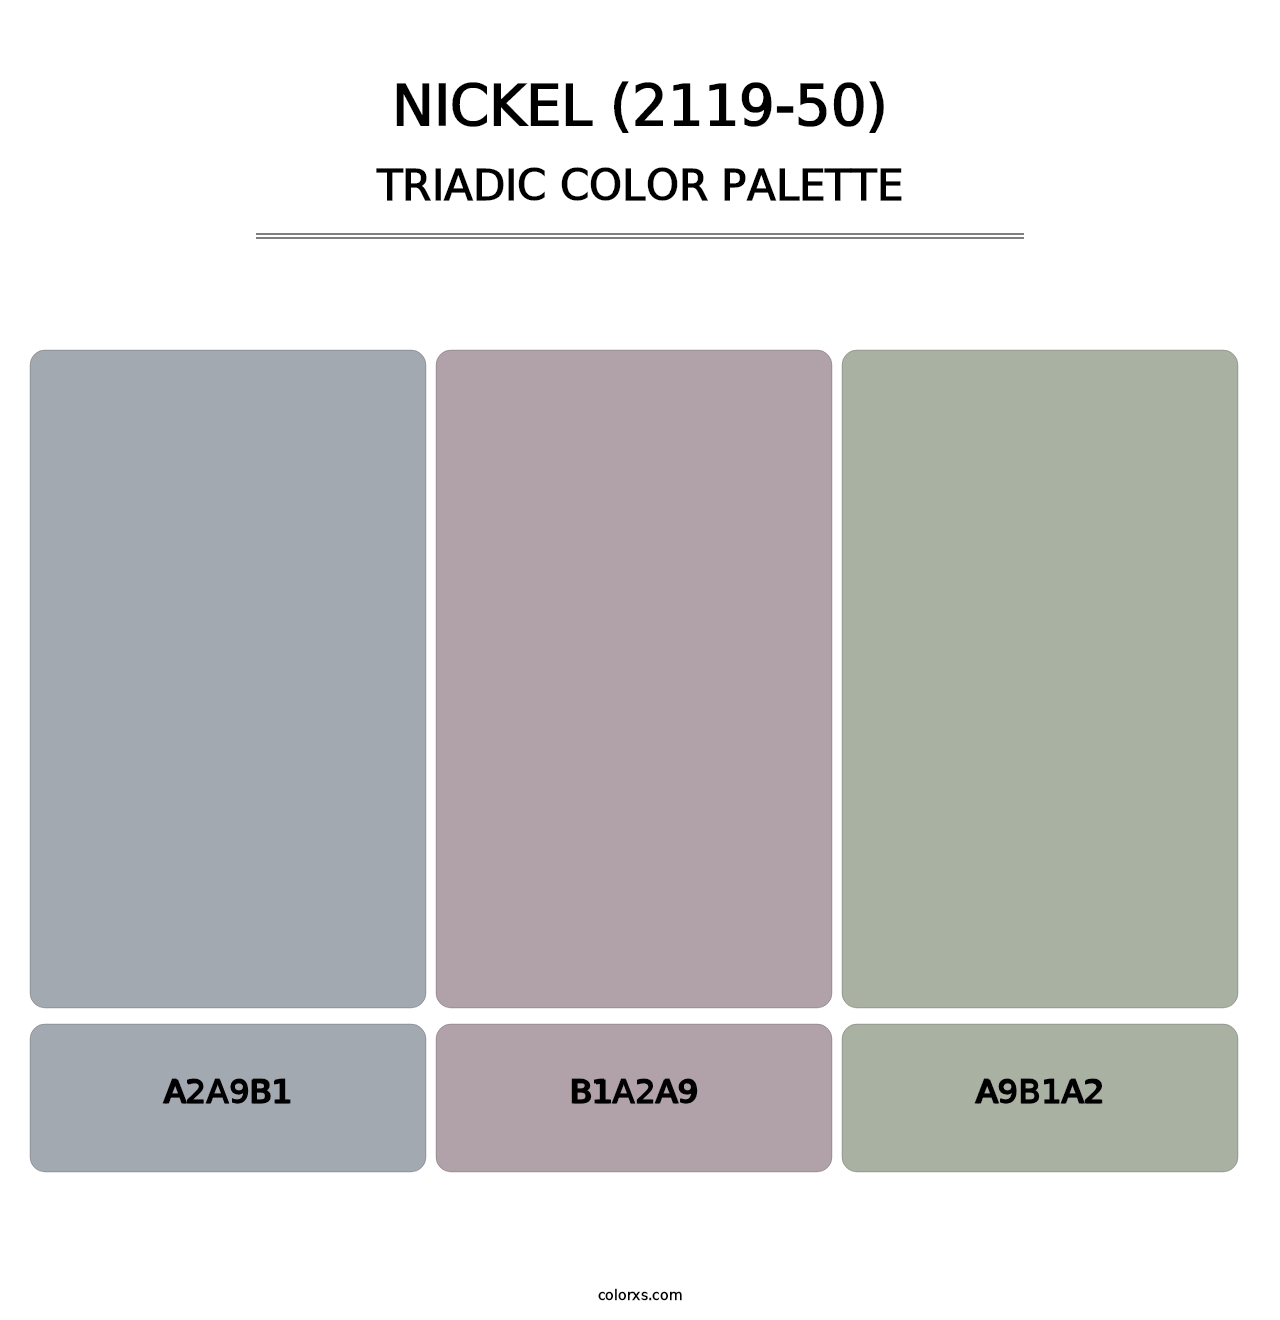 Nickel (2119-50) - Triadic Color Palette